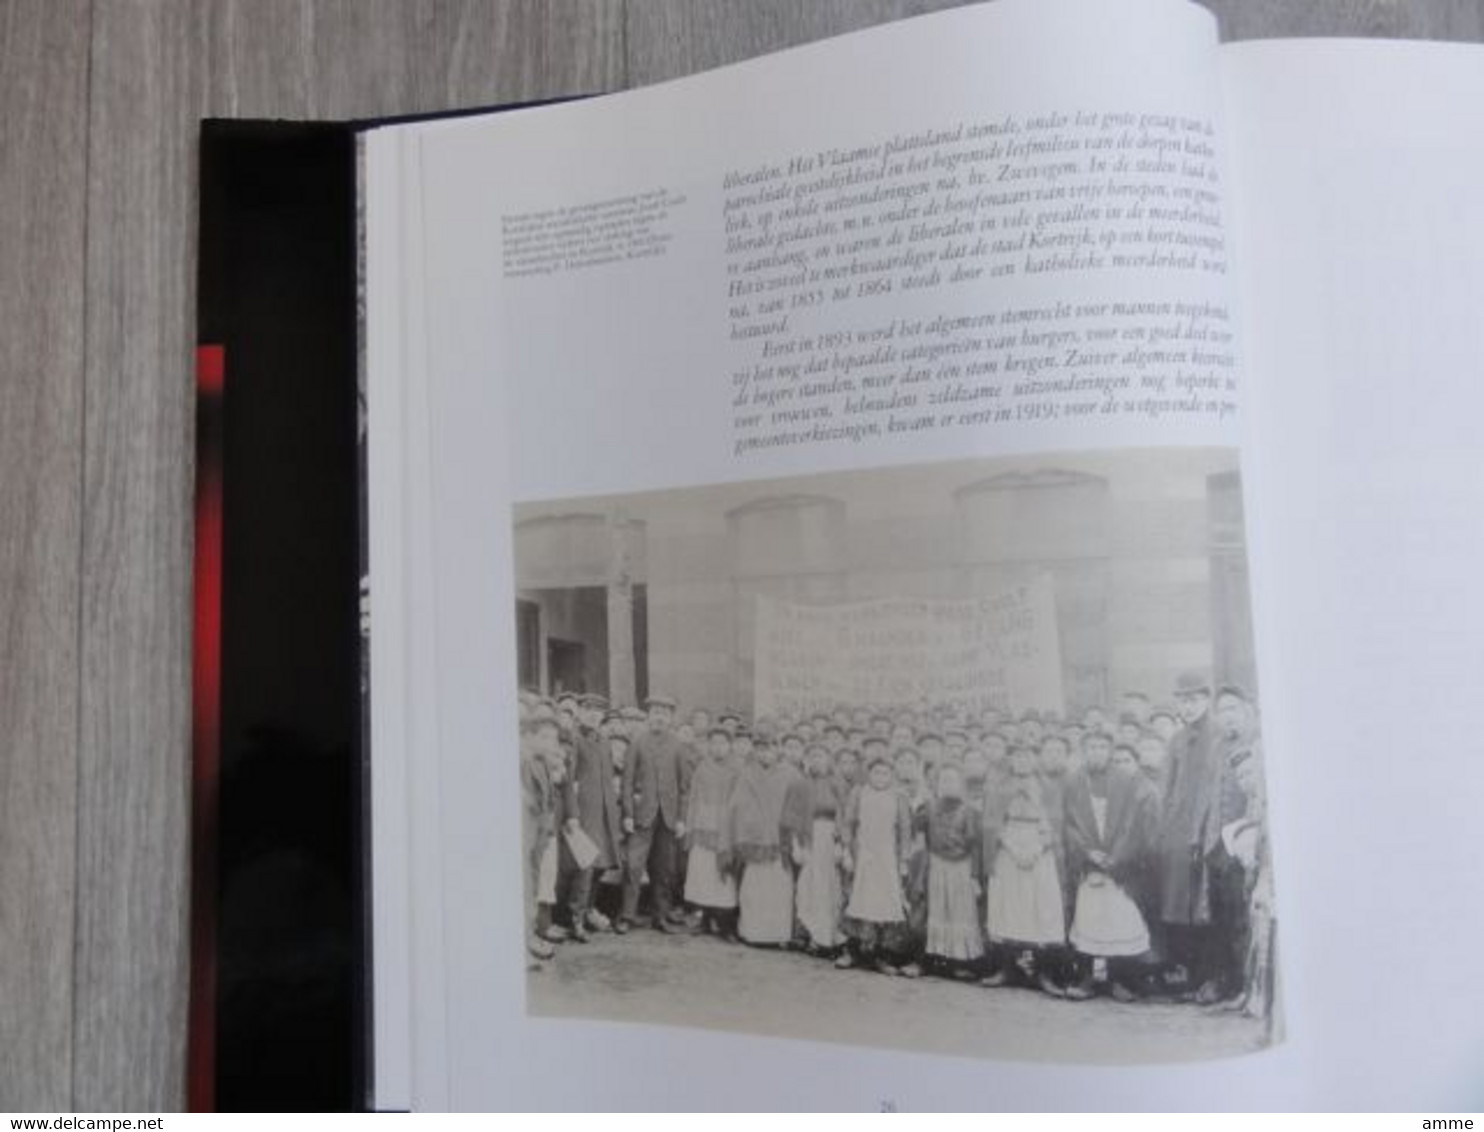 Zwevegem - Bekaert 100  * (boek)  Bekaert 1880 - 1980  -  Economische ontwikkeling in Zuid-West-Vlaanderen